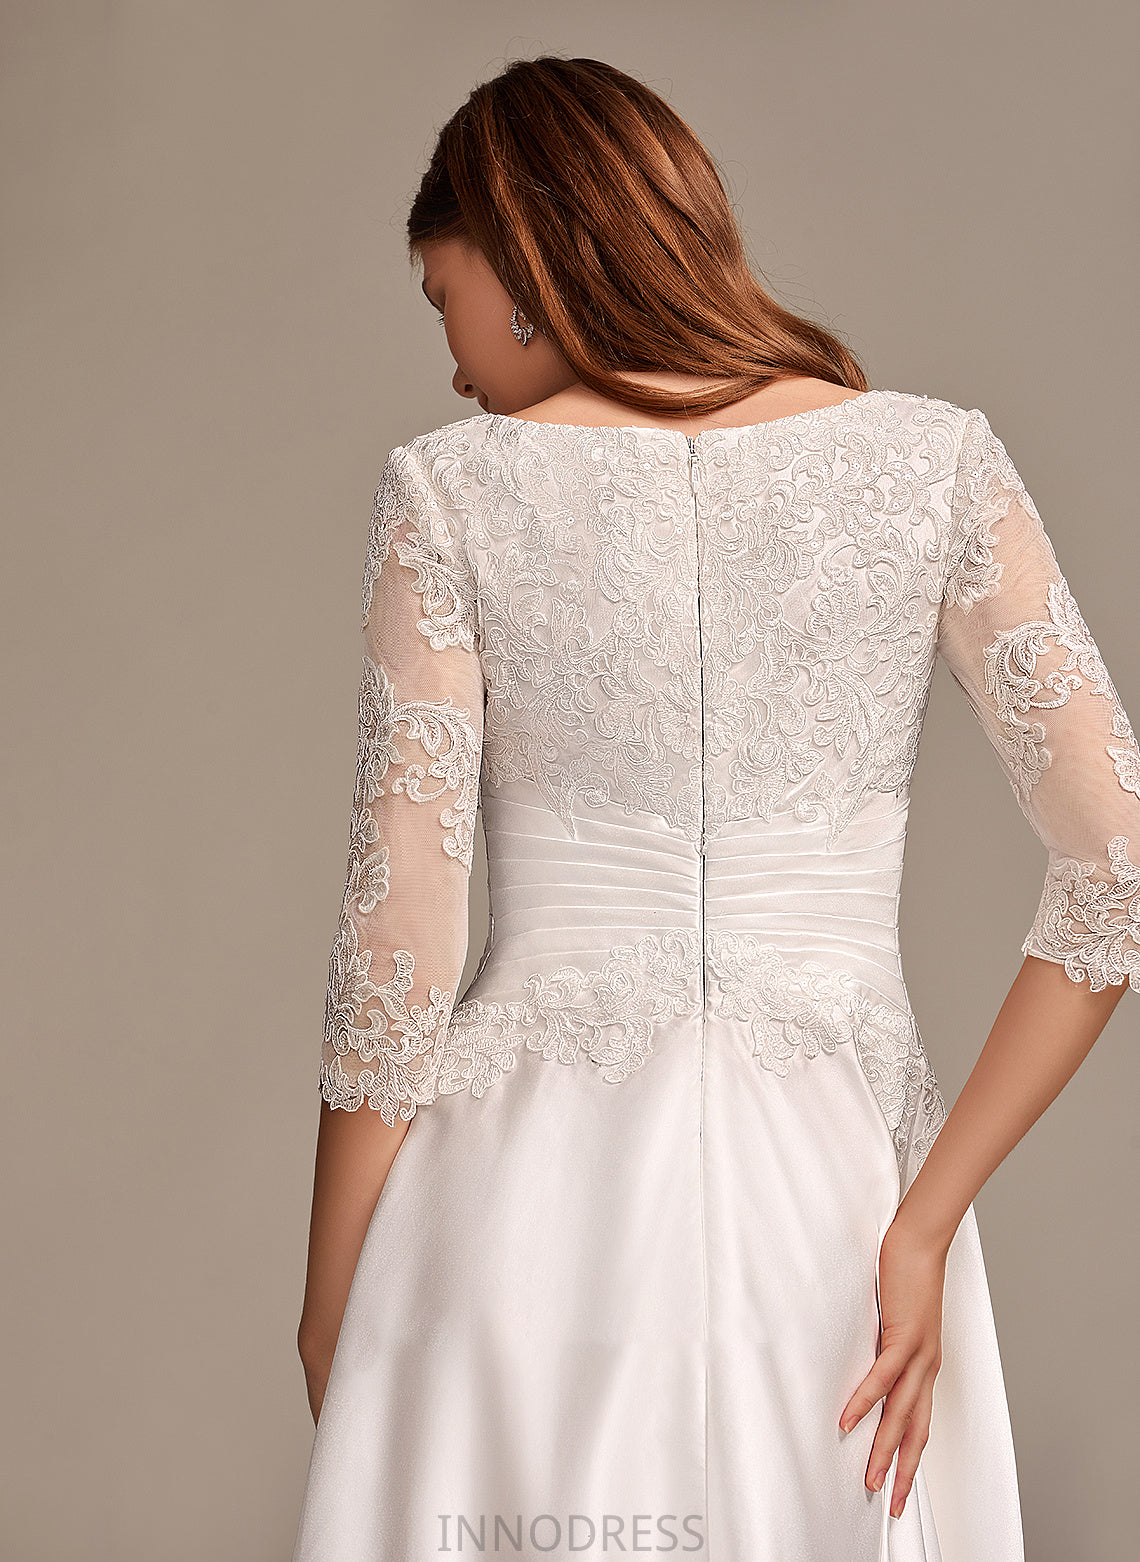 Pockets Neck With Wedding Dress Tea-Length Scoop Wedding Dresses Livia A-Line